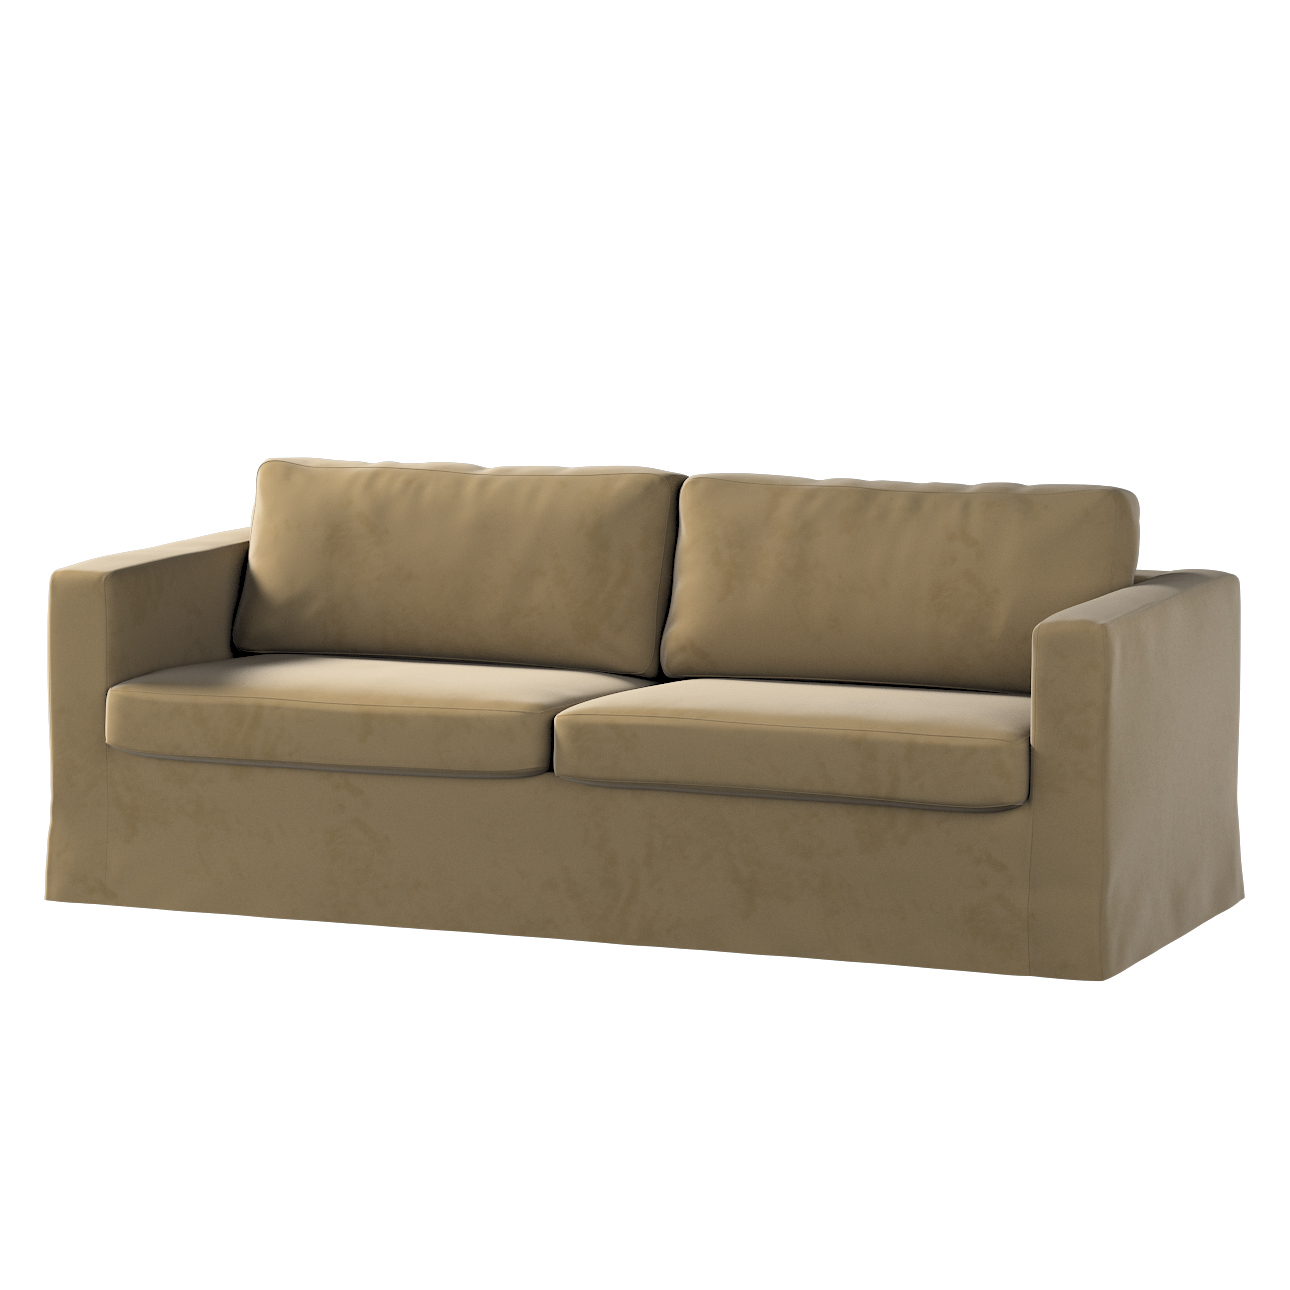 Bezug für Karlstad 3-Sitzer Sofa nicht ausklappbar, lang, hellbraun, Bezug günstig online kaufen